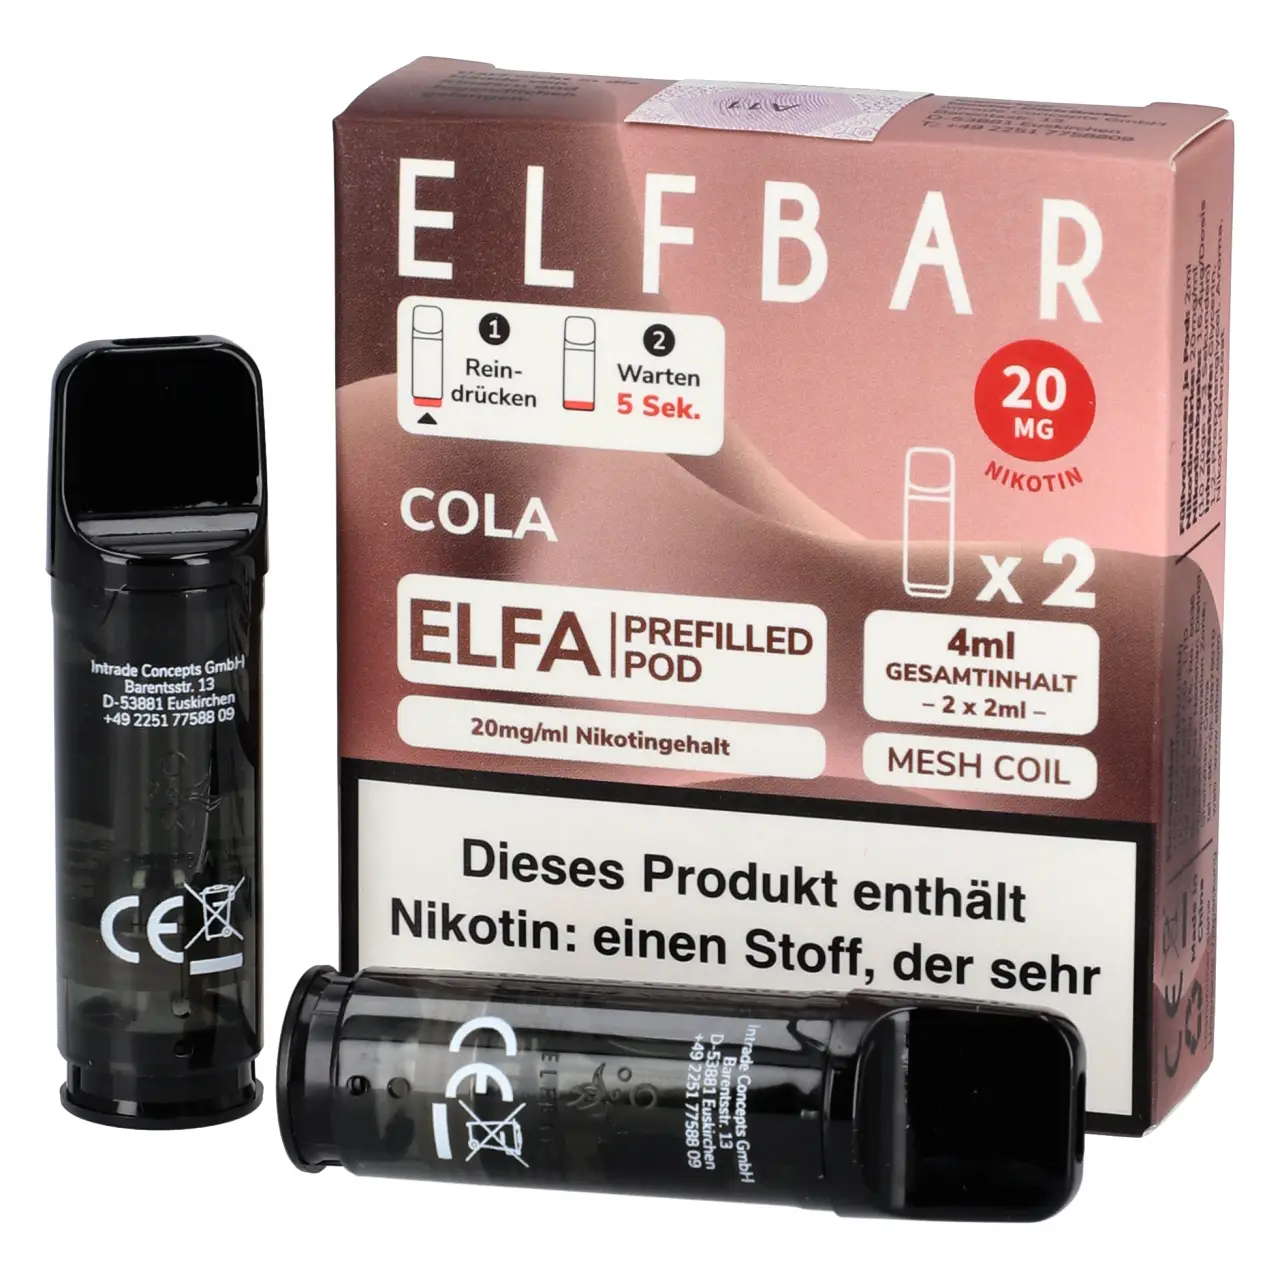 Cola - Elf Bar ELFA Prefilled POD für Mehrweg Vape - befüllt mit 2ml Liquid - 2er Packung